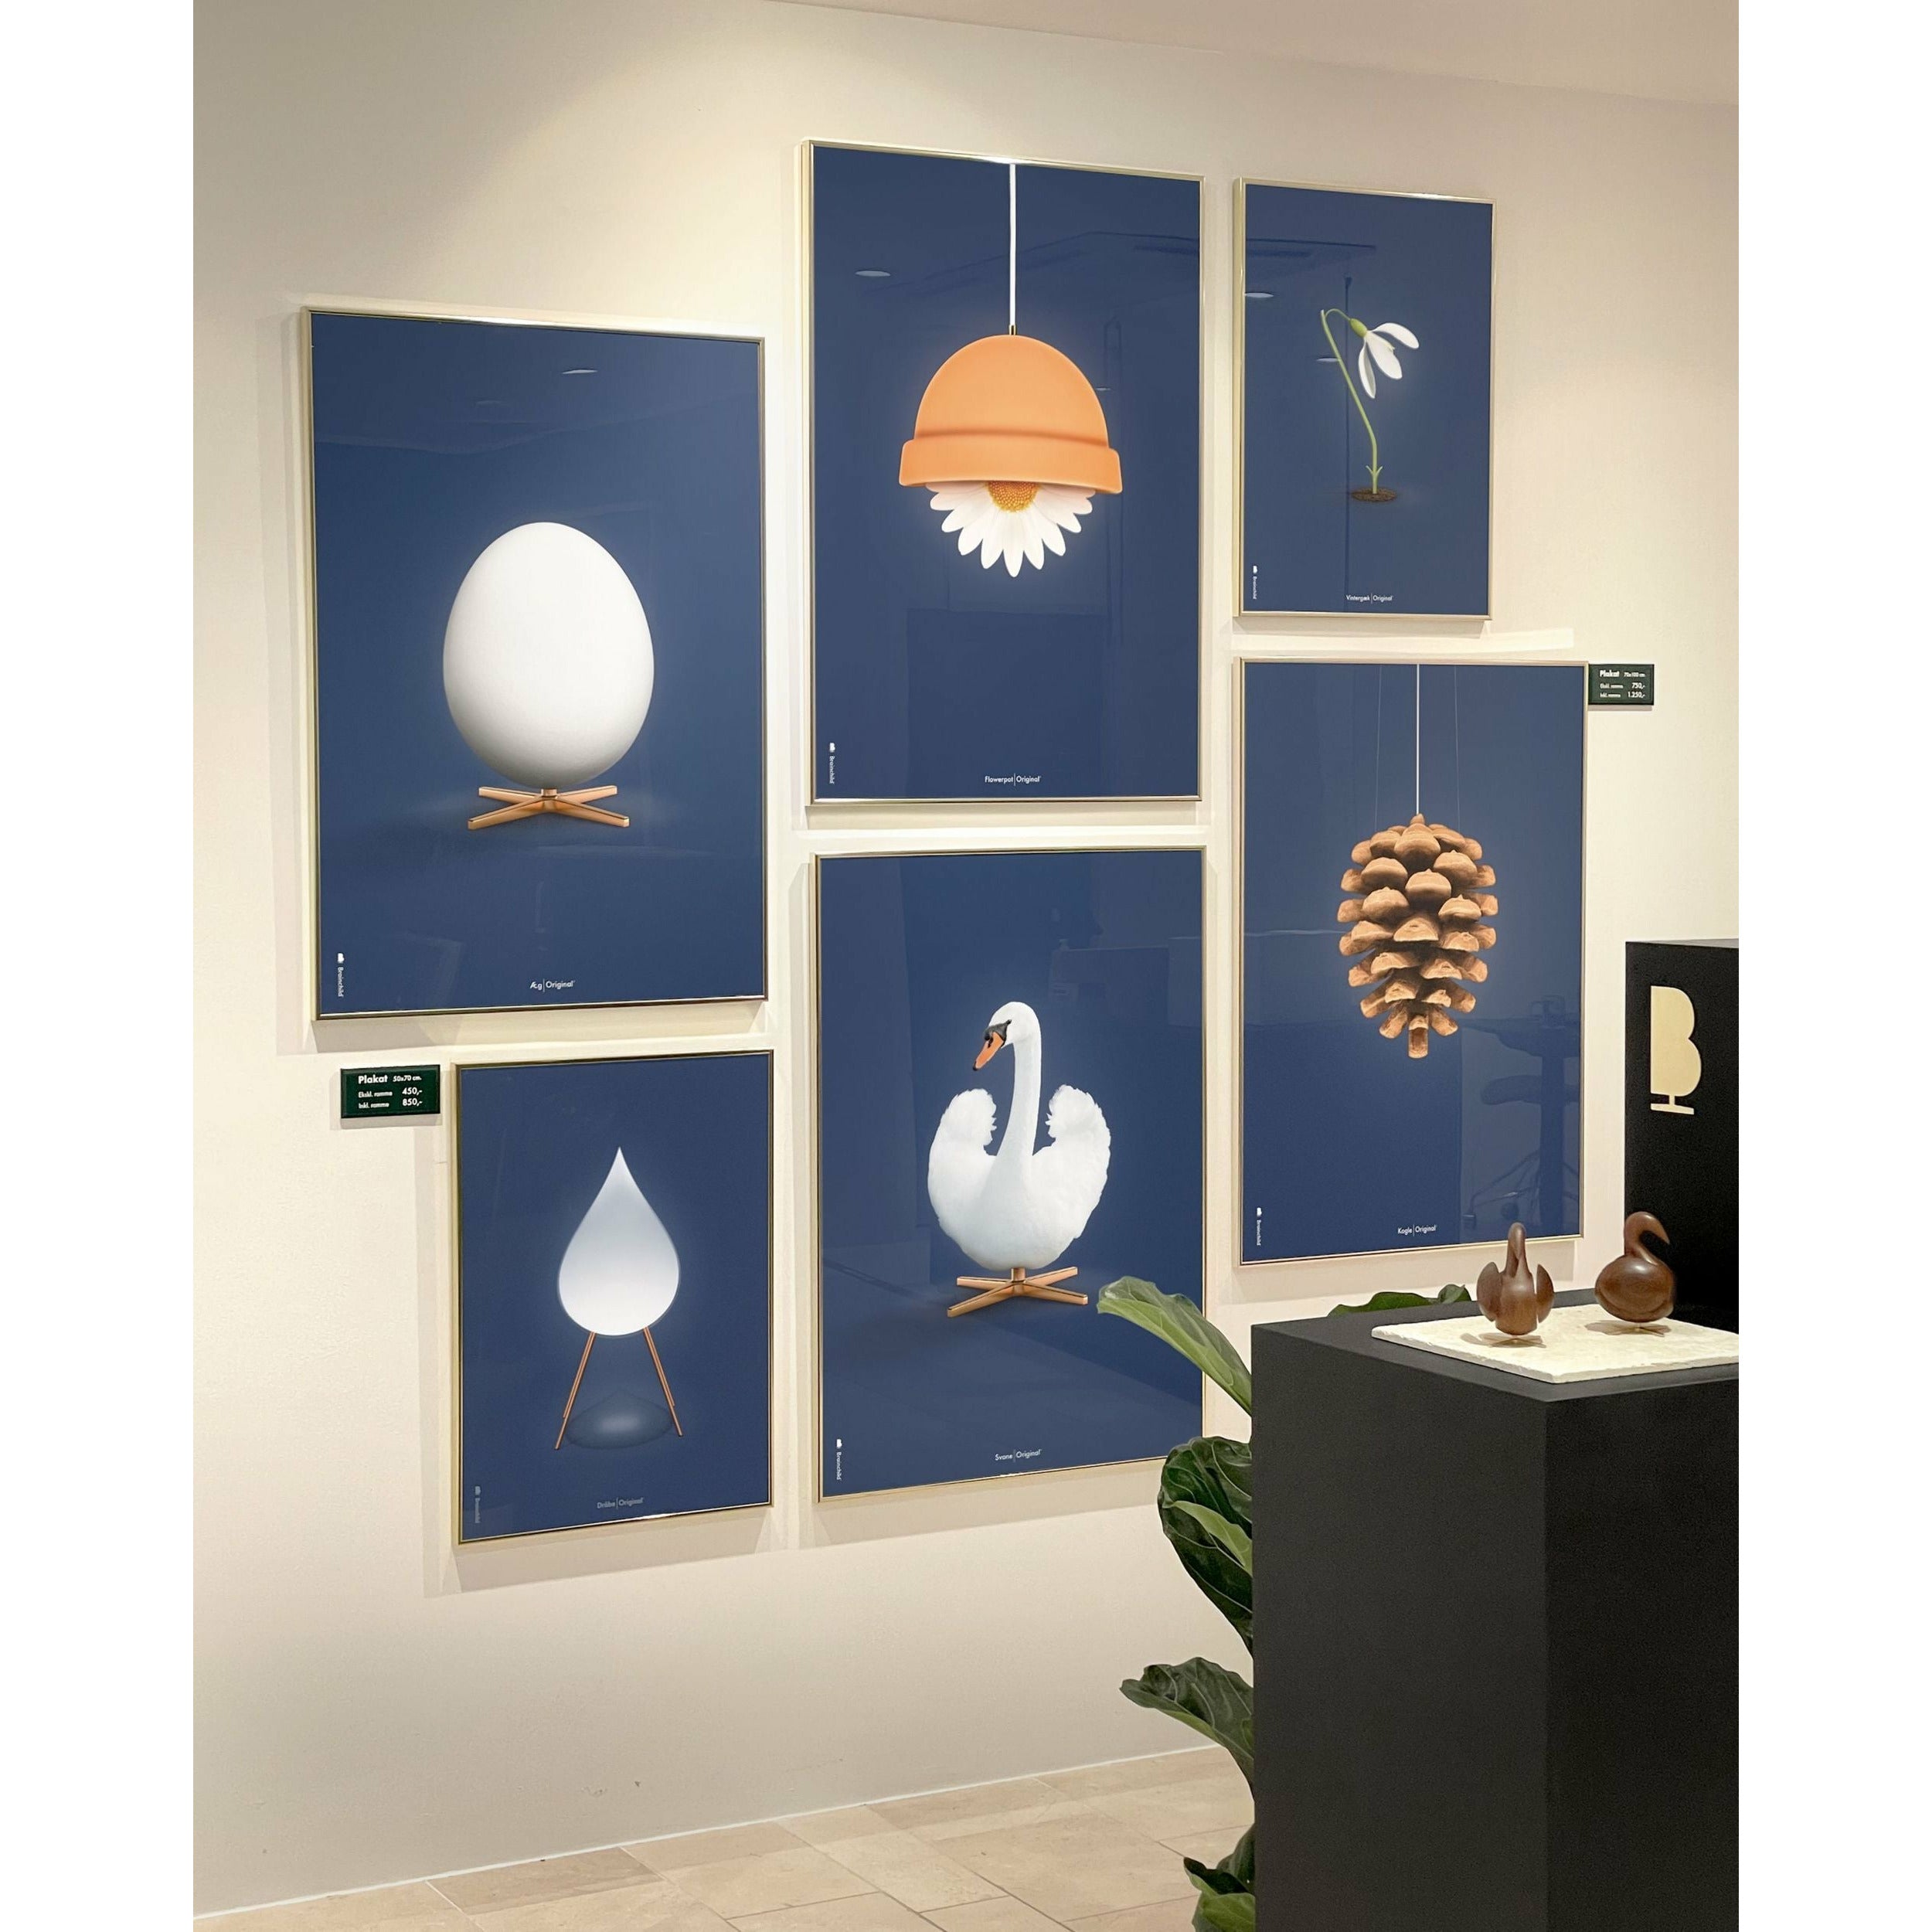 brainchild Swan Classic Poster, frame gemaakt van licht hout 30x40 cm, donkerblauwe achtergrond